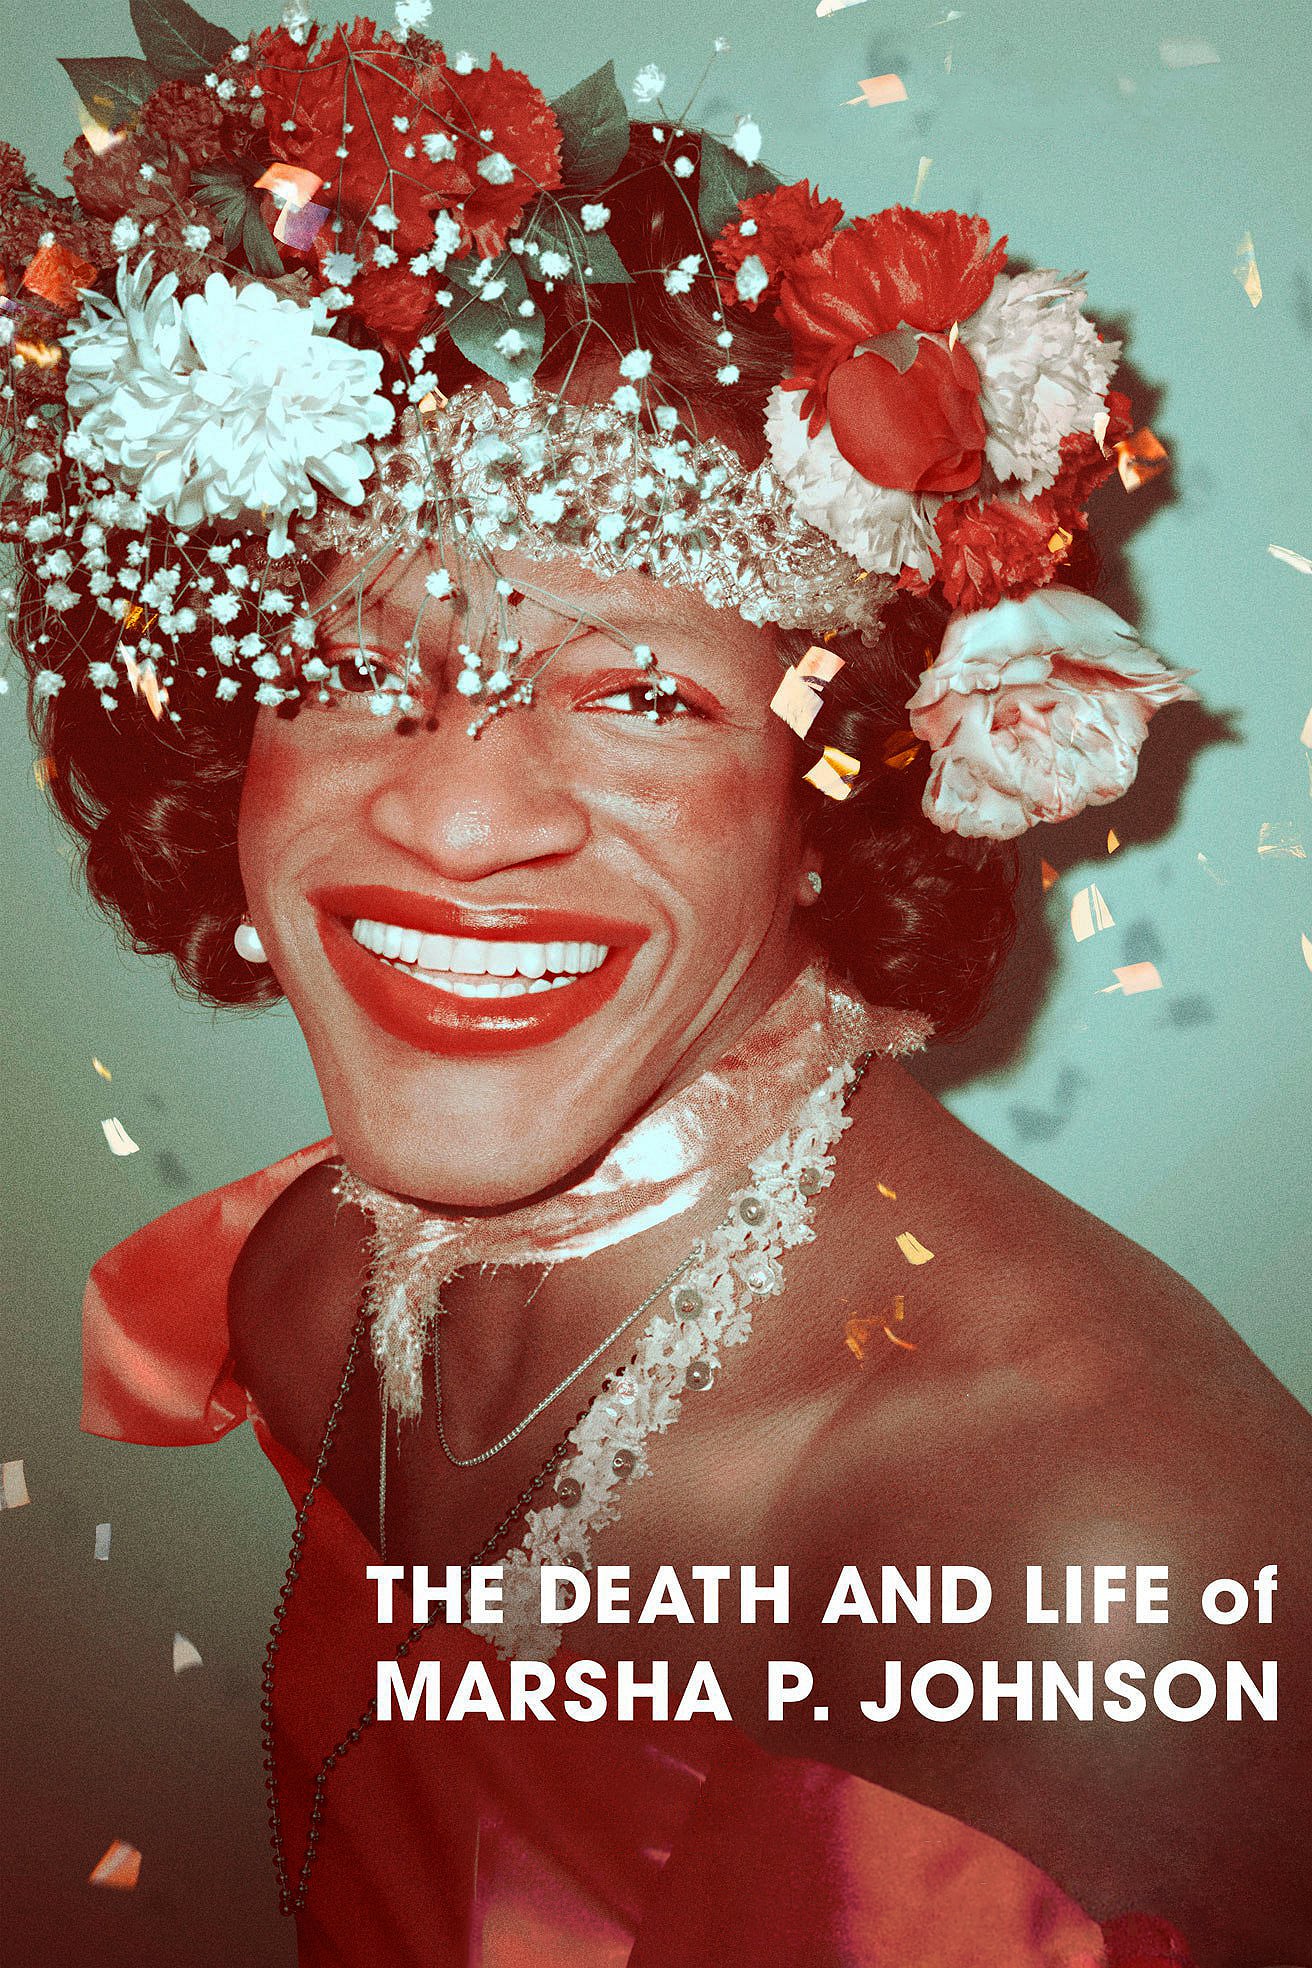 Caratula de The Death and Life of Marsha P. Johnson (Muerte y vida de Marsha P. Johnson) 